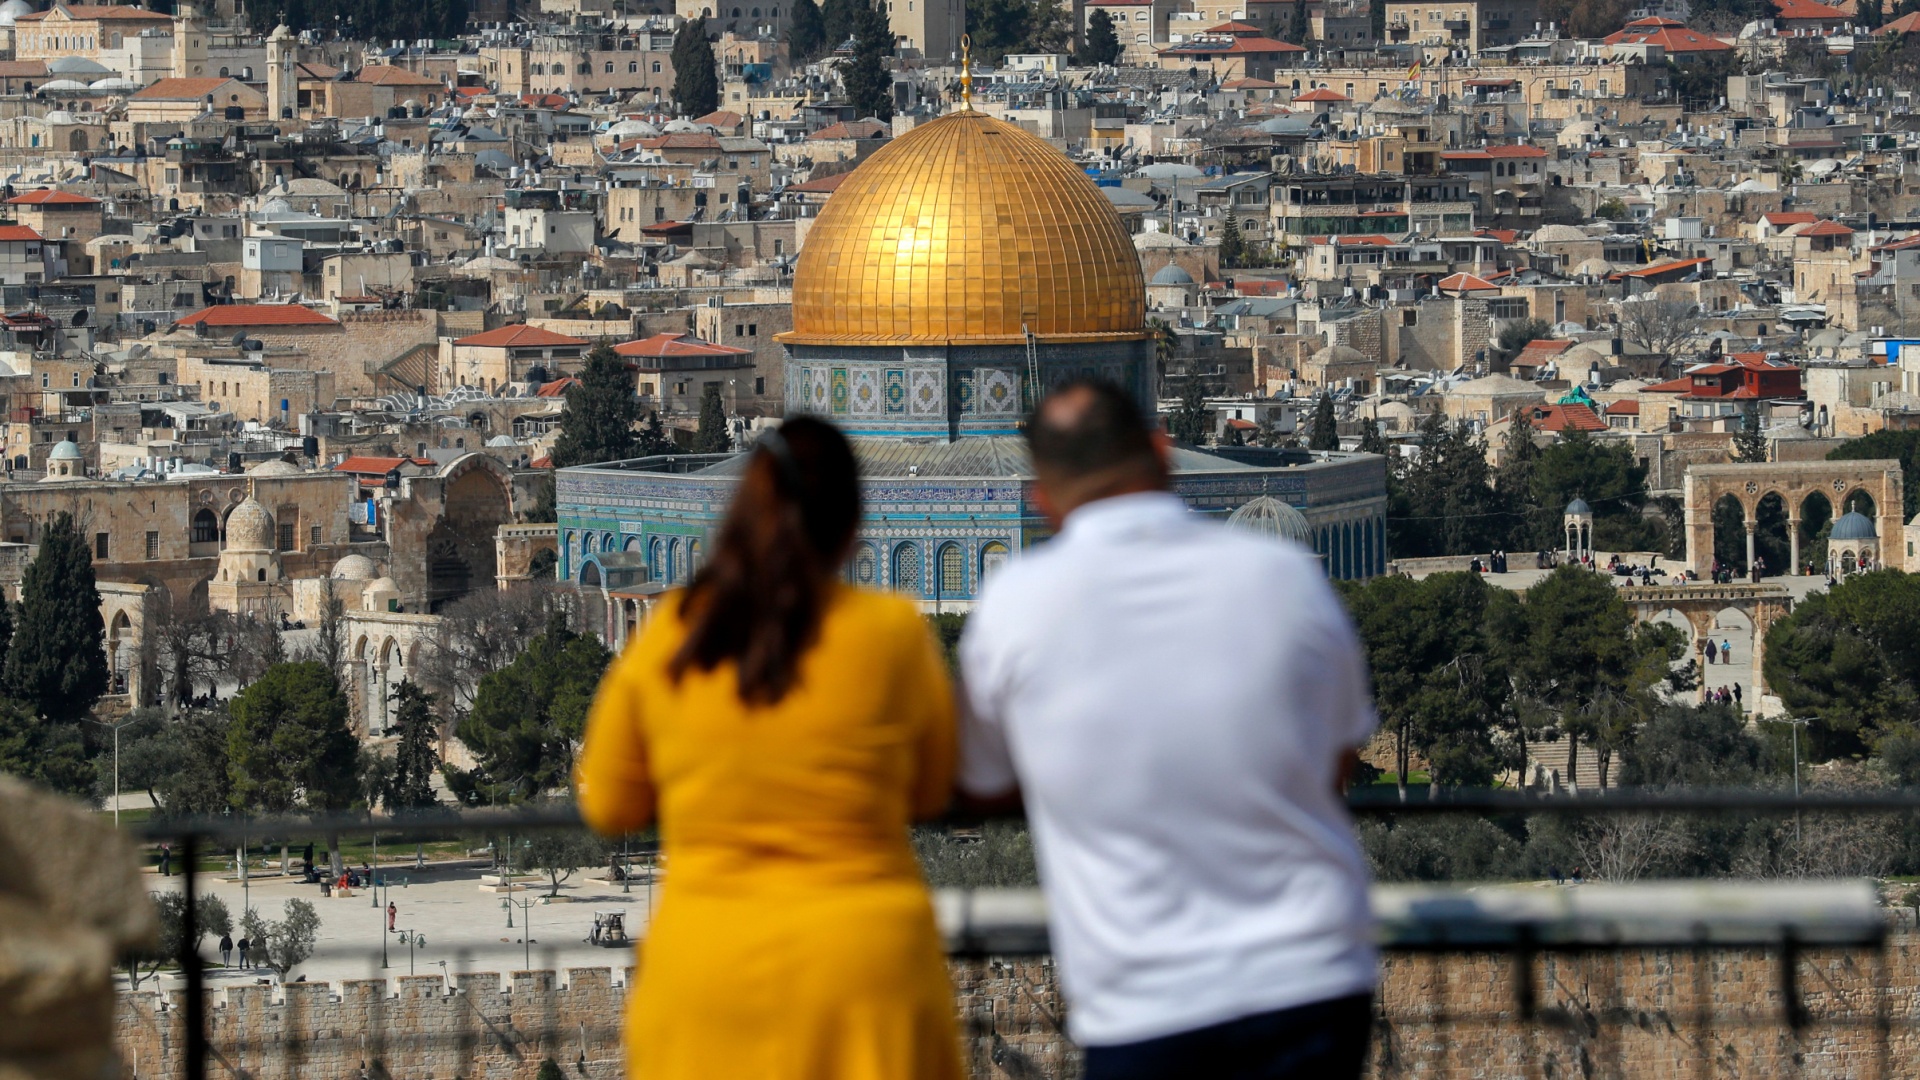 Иерусалим готовится к медленному возвращению туристов